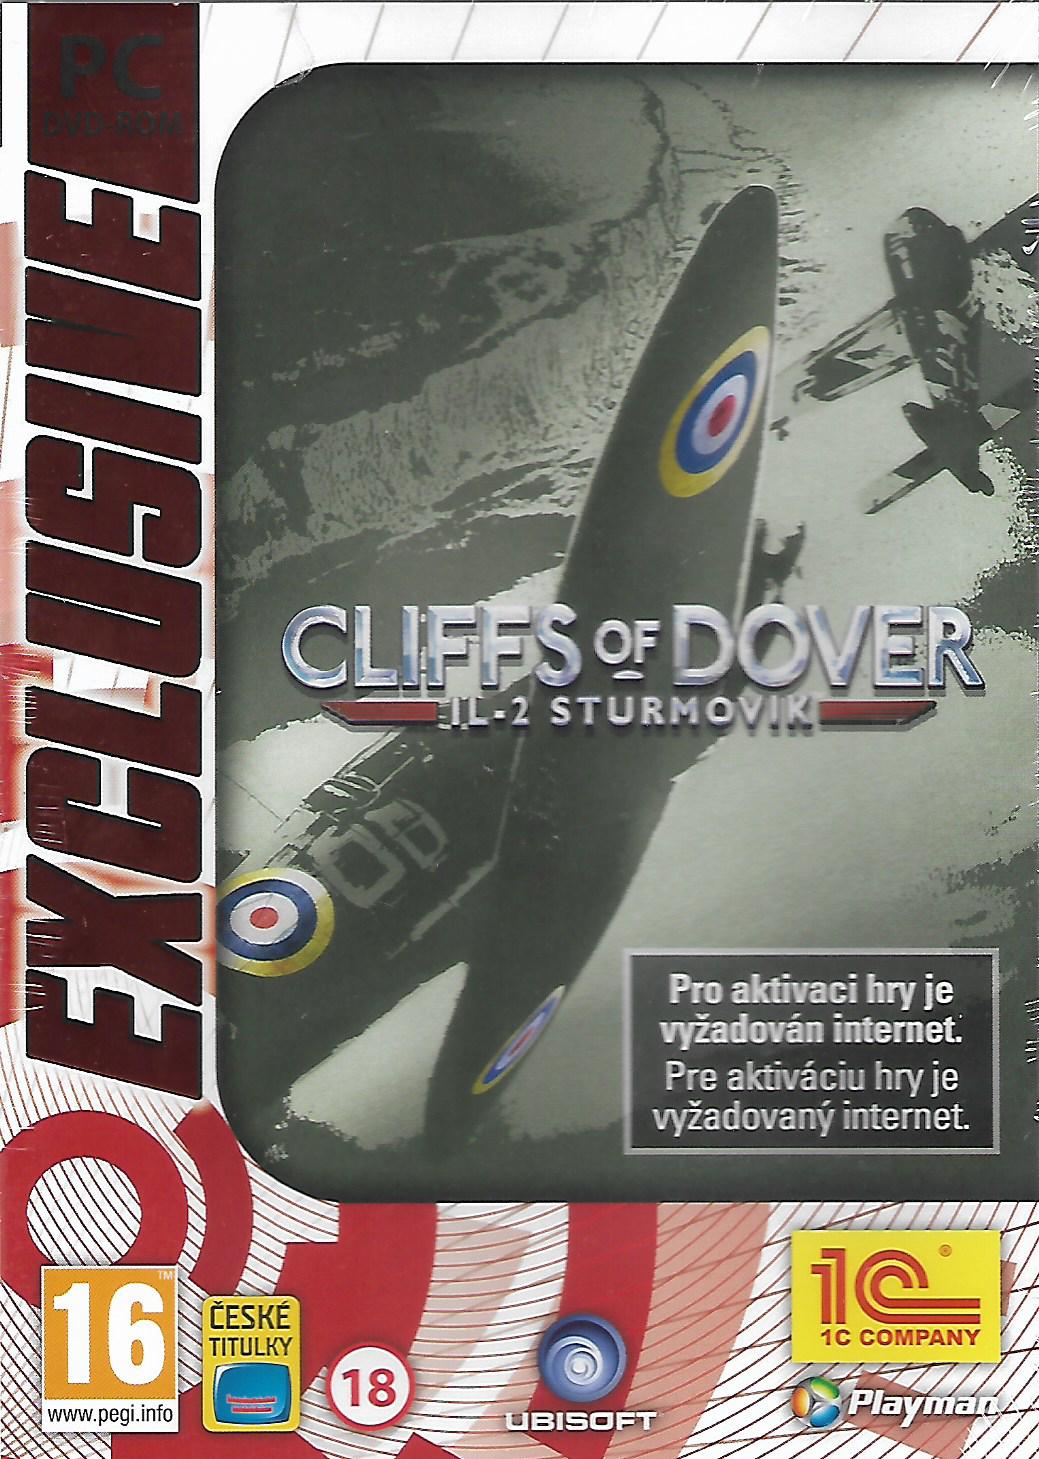 IL-2 STURMOVIK - CLIFFS OF DOVER (PC - nová)